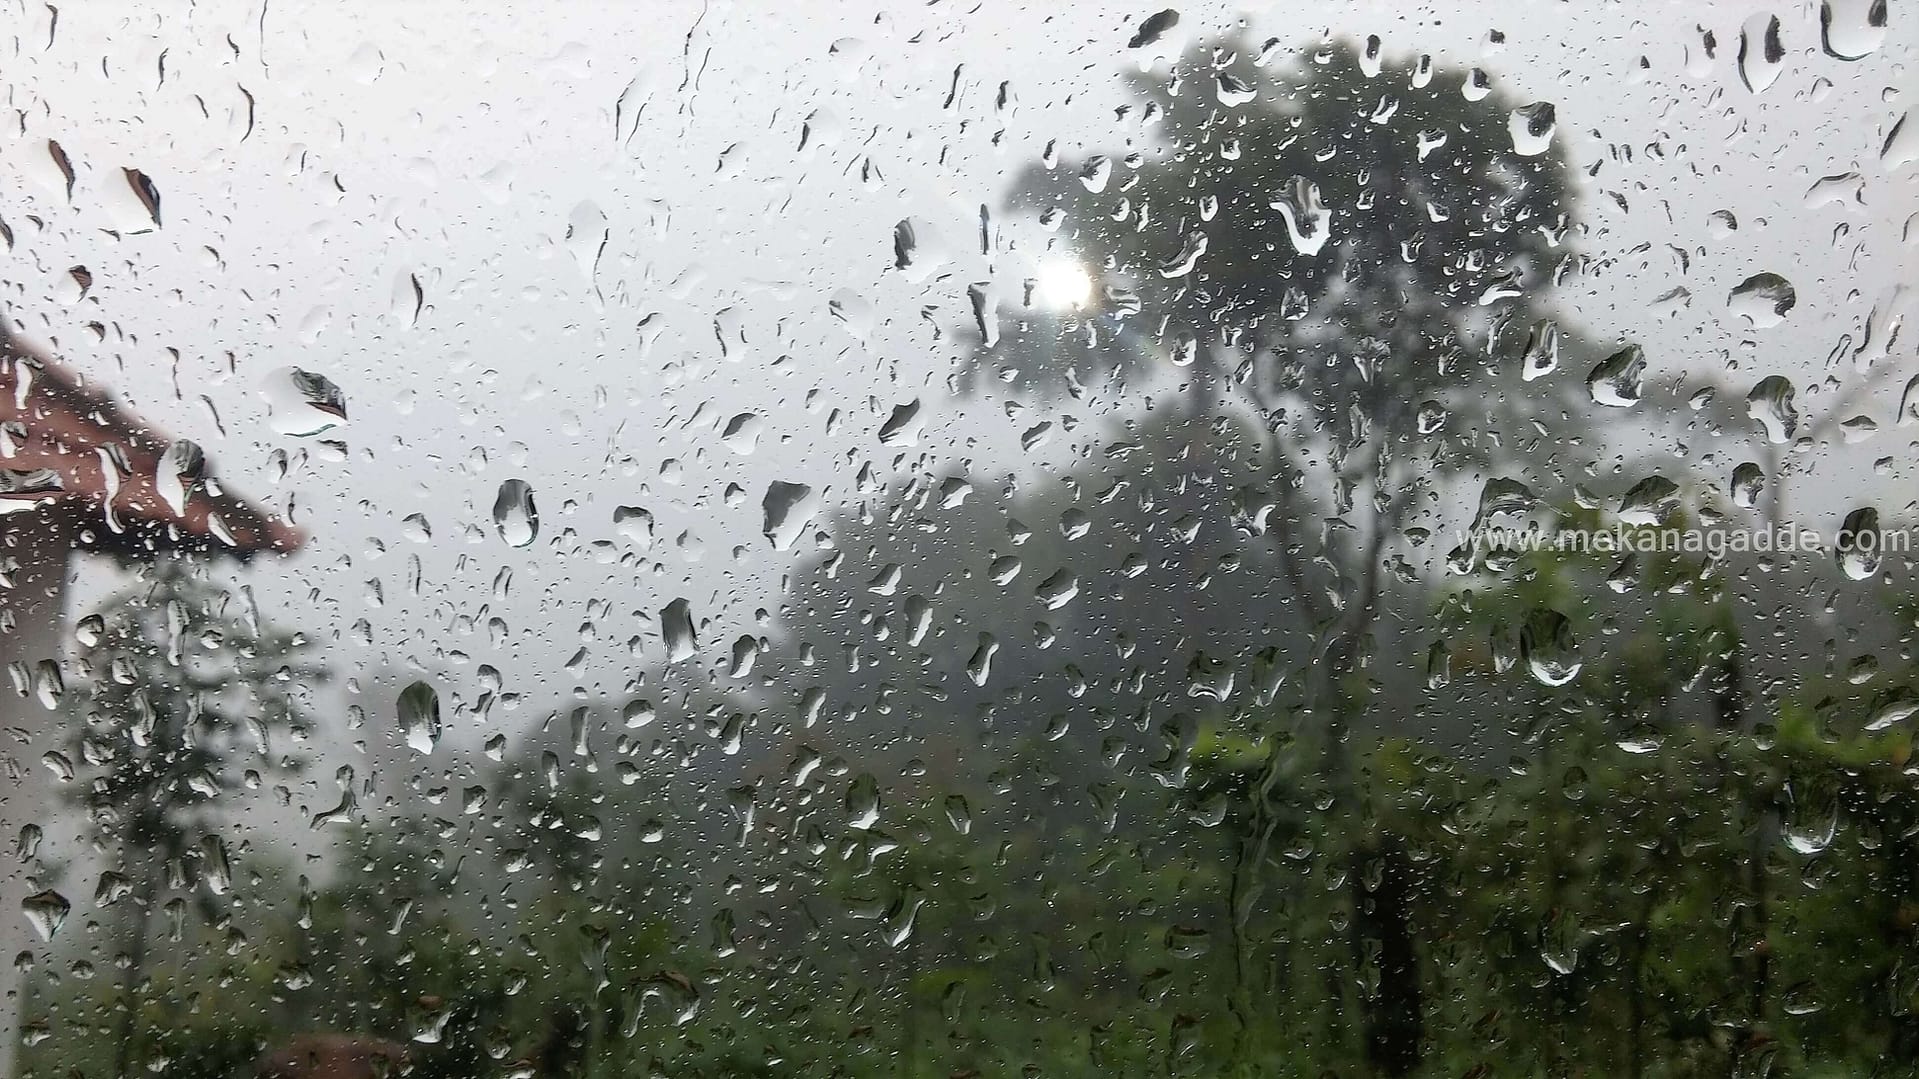 Sakleshpur Rain